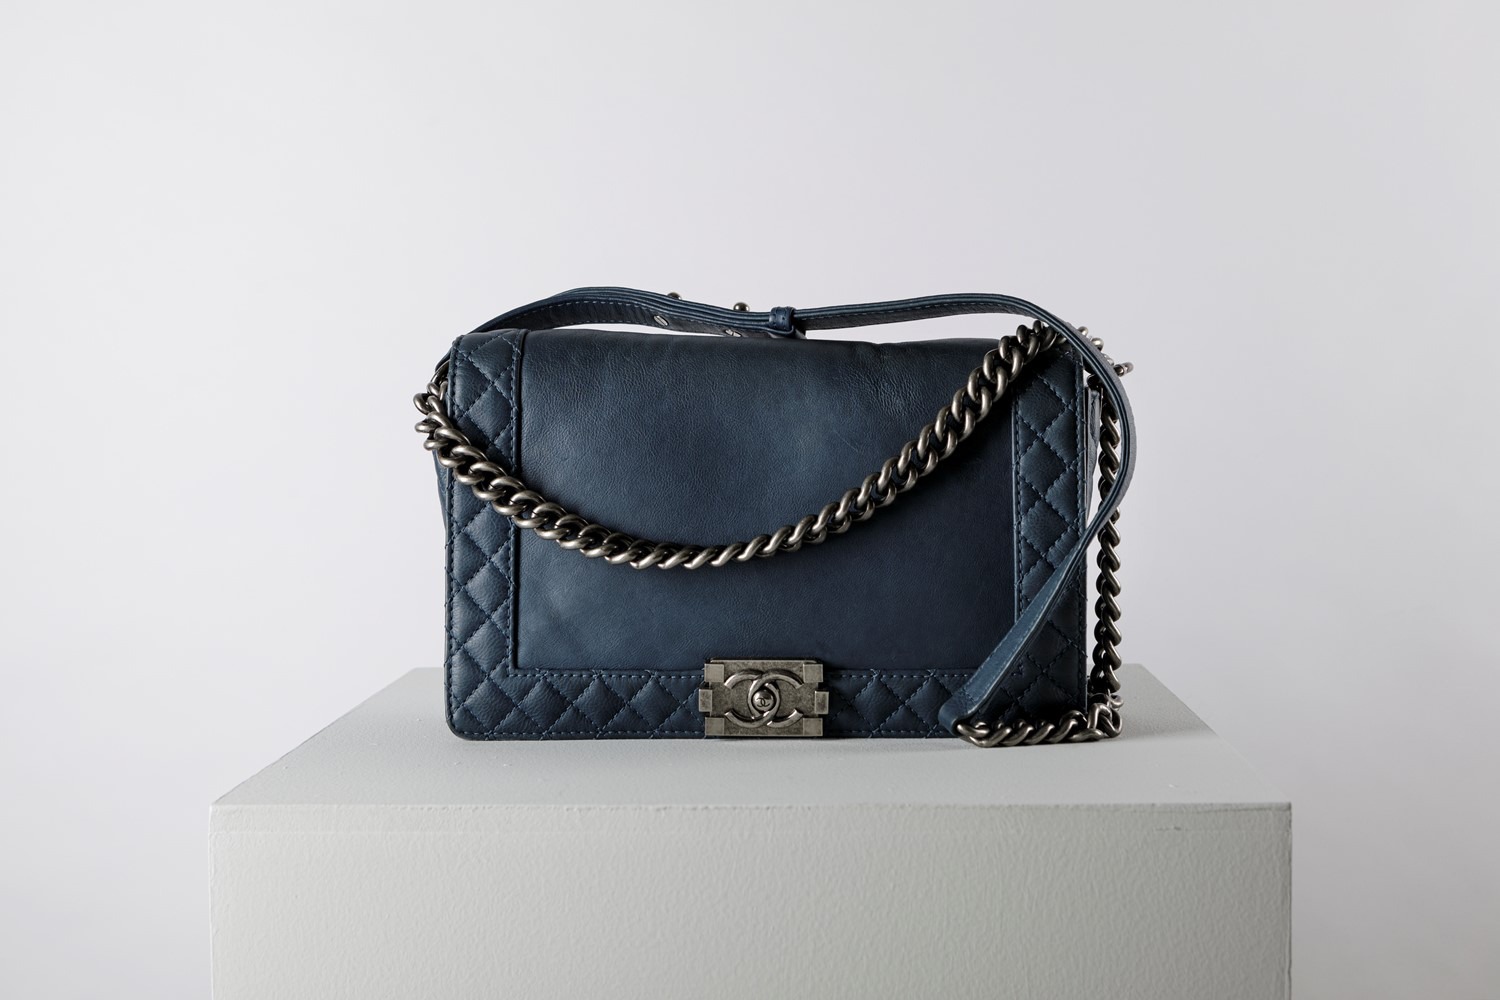 La borsa “Boy” di Chanel, storia di un grande amore – Finarte